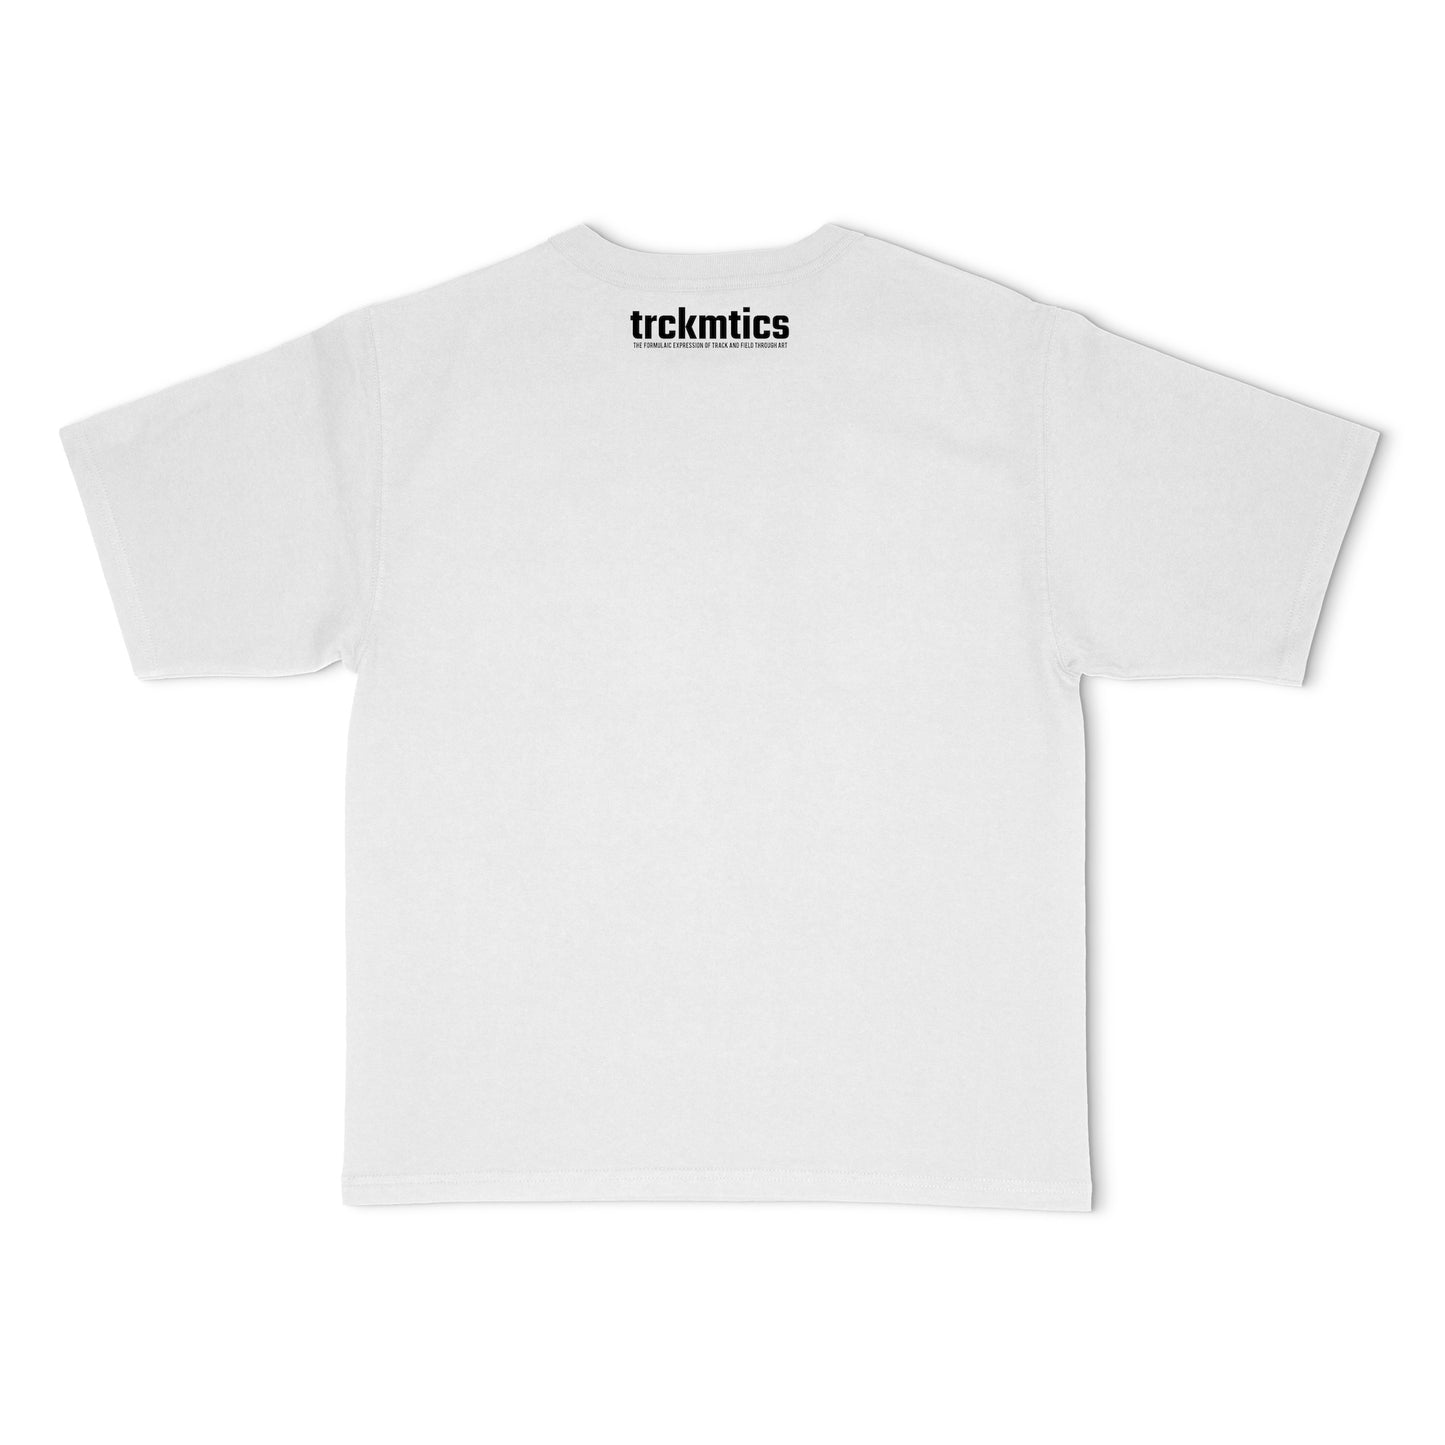 The Dream Team White T-shirt